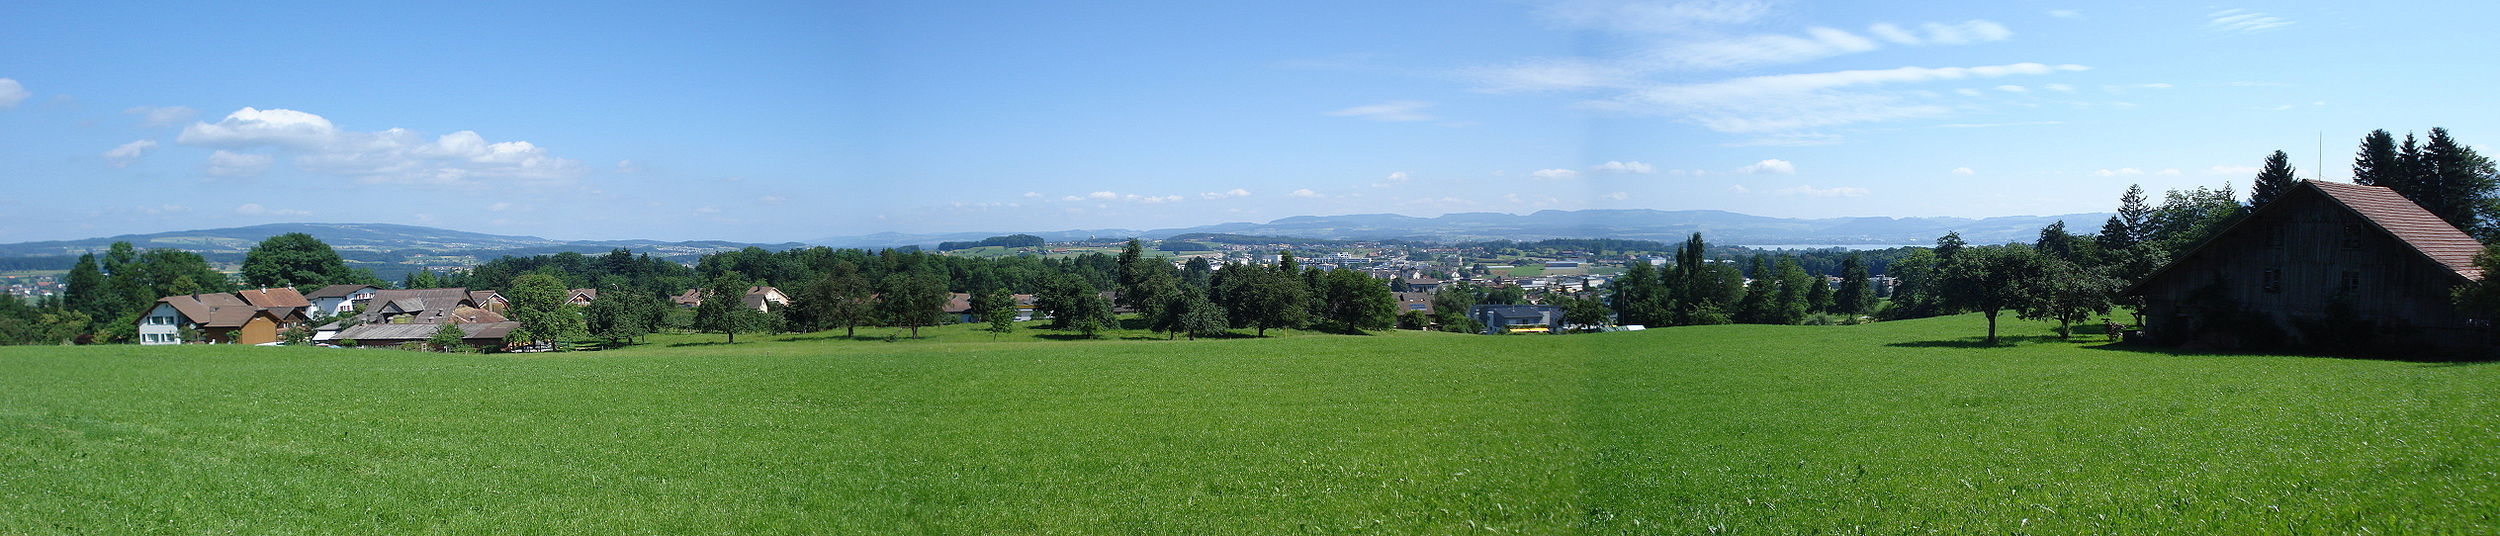 Blick von Ibikon am Fusse des Rooterberges auf Rotkreuz, Küntwil (links) sowie den Zugersee im Hintergrund.